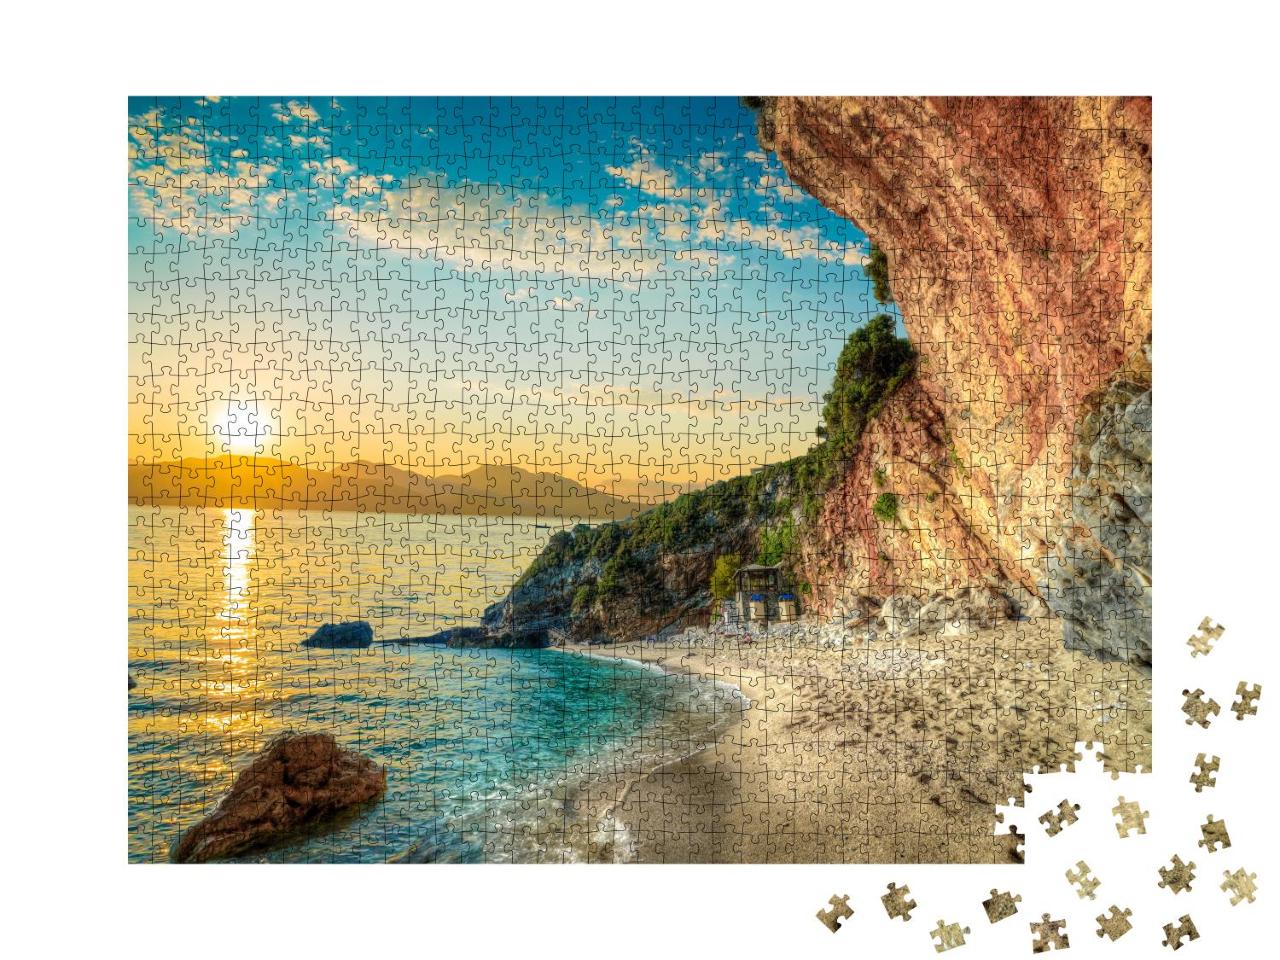 Puzzle 1000 Teile „Schöne Landschaft mit Strand und Meer bei Sonnenaufgang, Korfu, Griechenland“